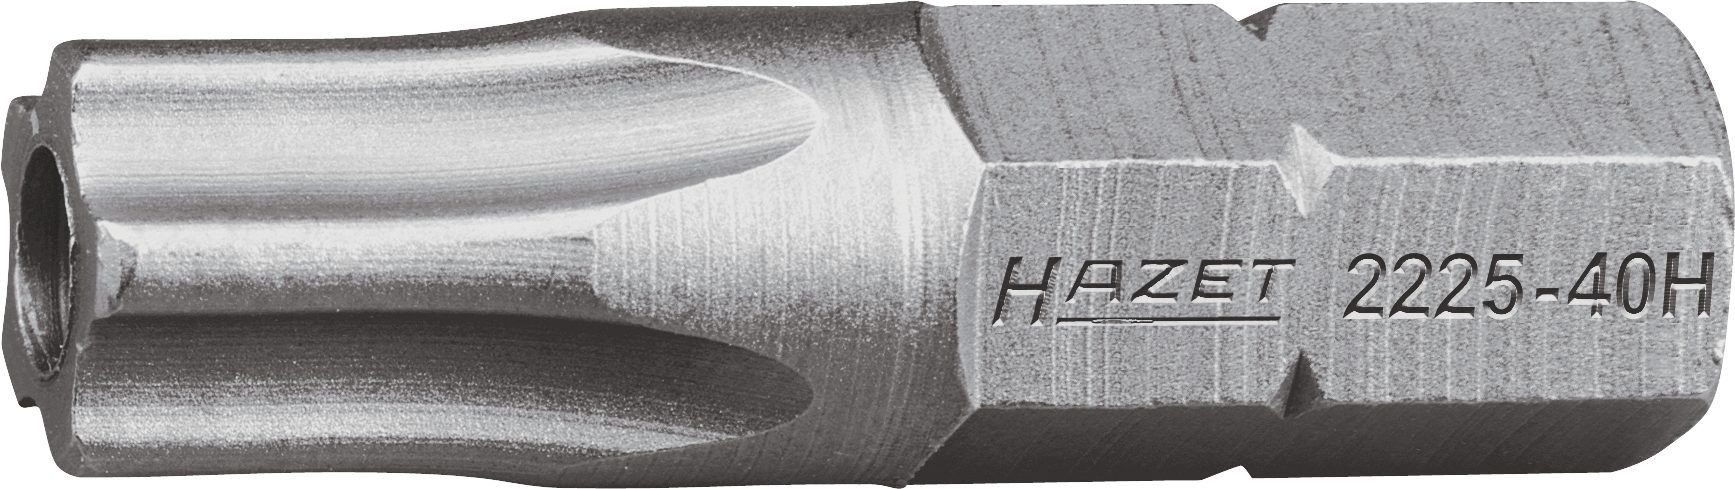 HAZET Bit-Set Hazet 5-Stern-Schraubendr.-Einsatz (Bit), 2225-25H